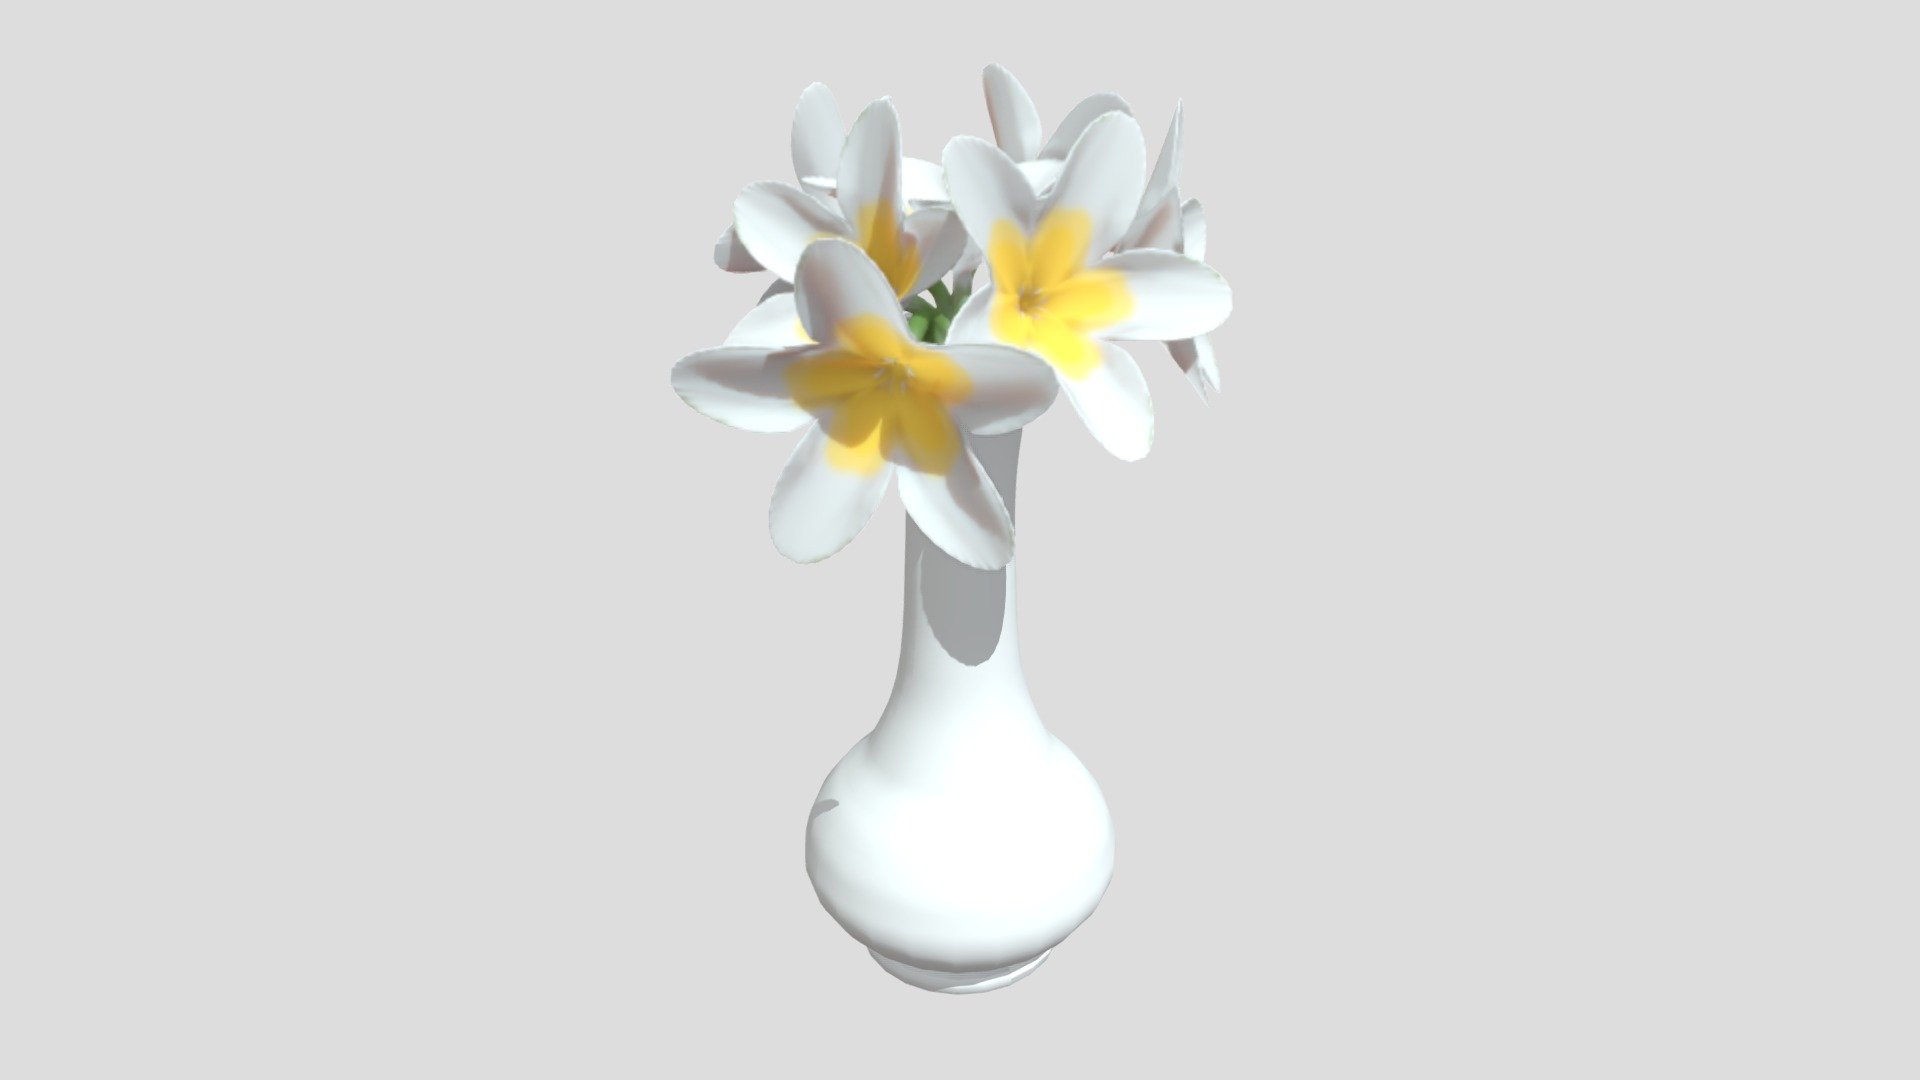 Flower vase.

Made in Blender 3d model